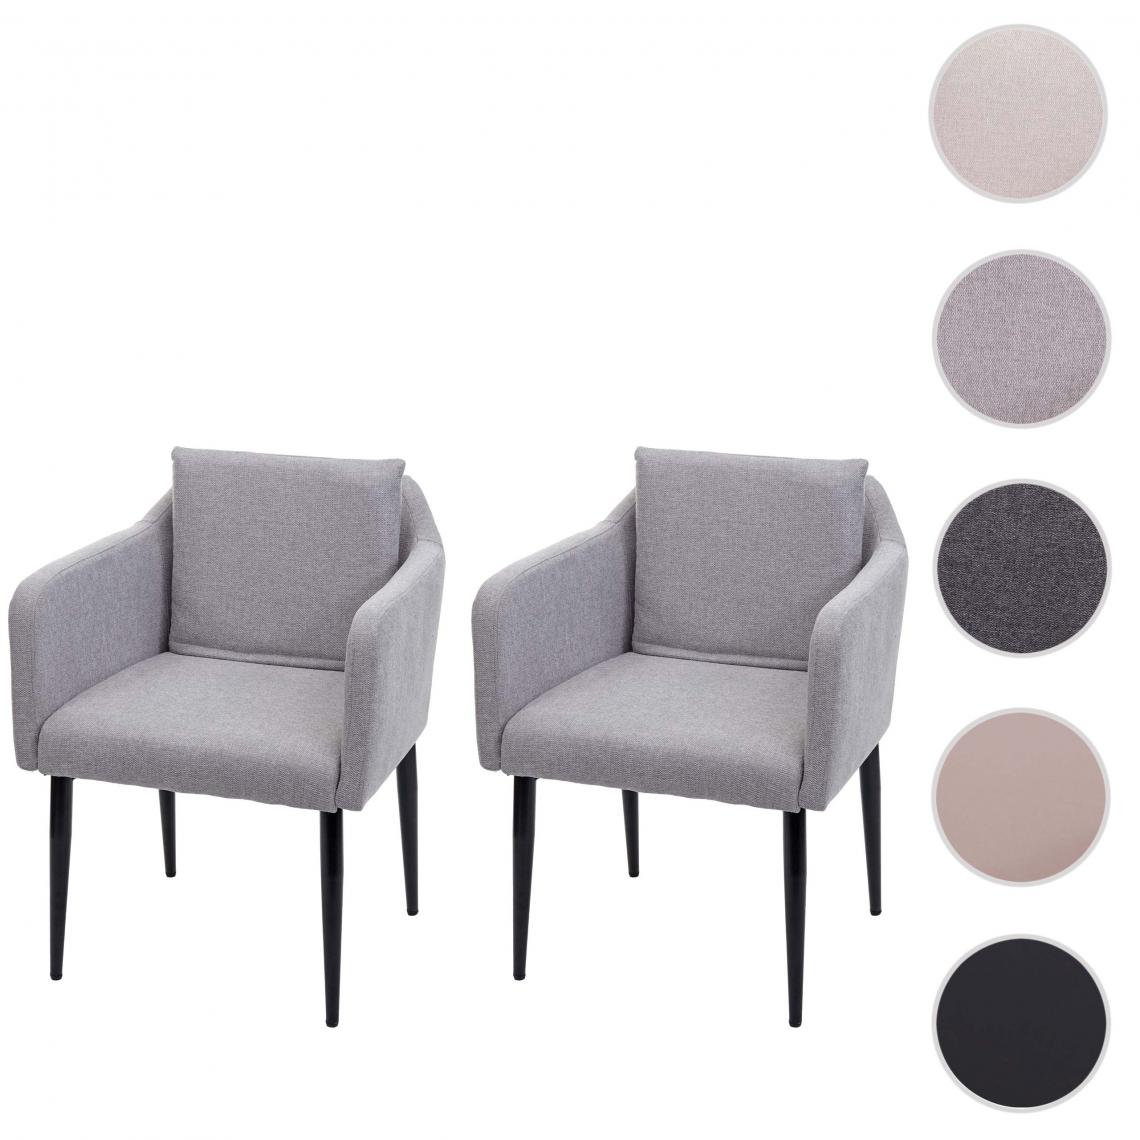 Mendler - 2x Chaise de salle à manger HWC-H93, chaise de cuisine chaise longue ~ tissu/textile gris clair - Chaises